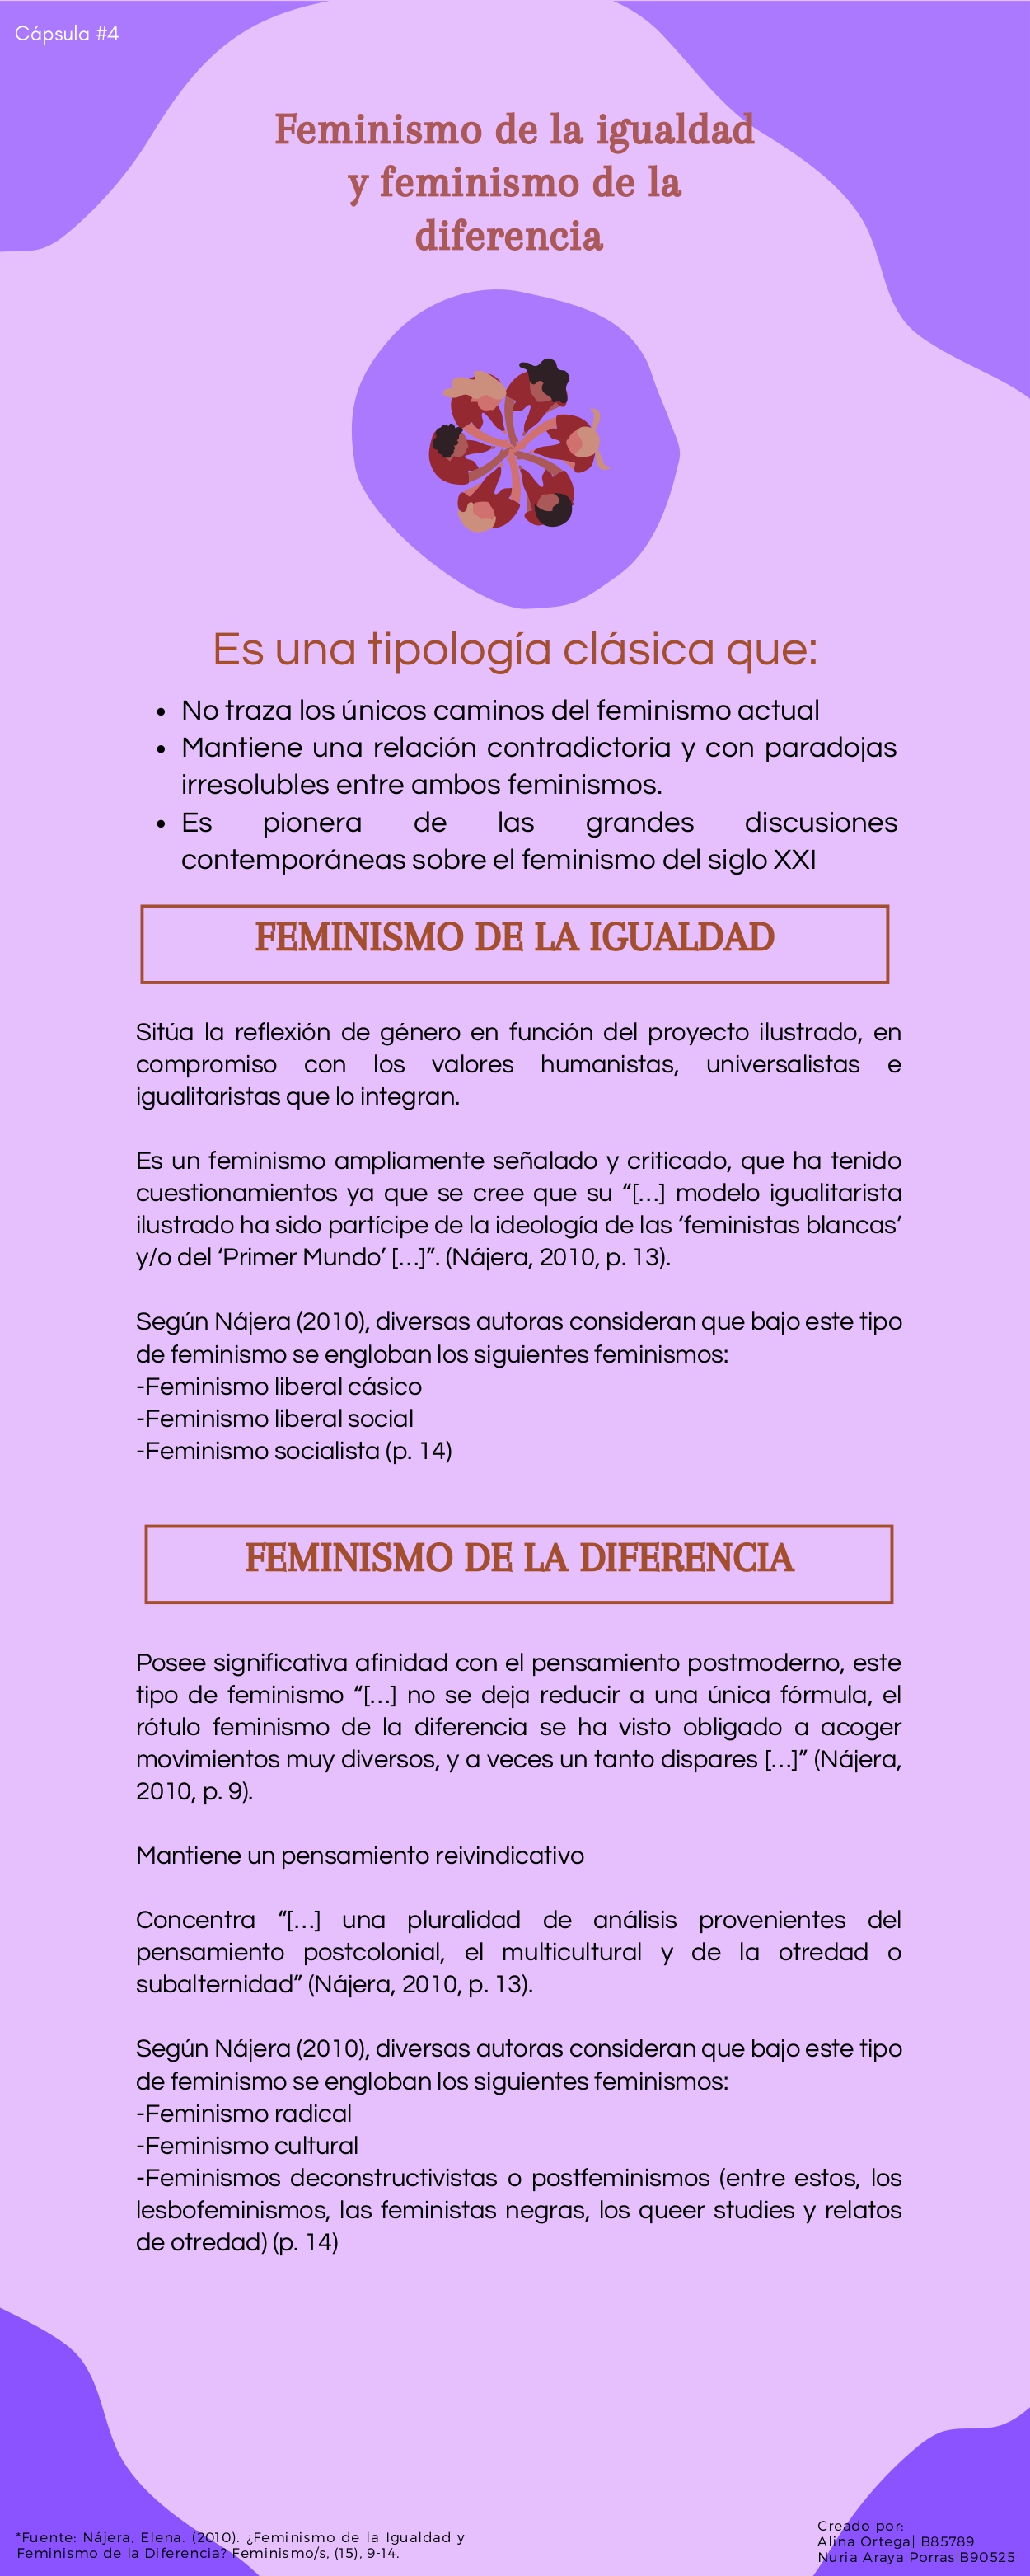 Cápsula 4- Feminismo de la igualdad y diferencia